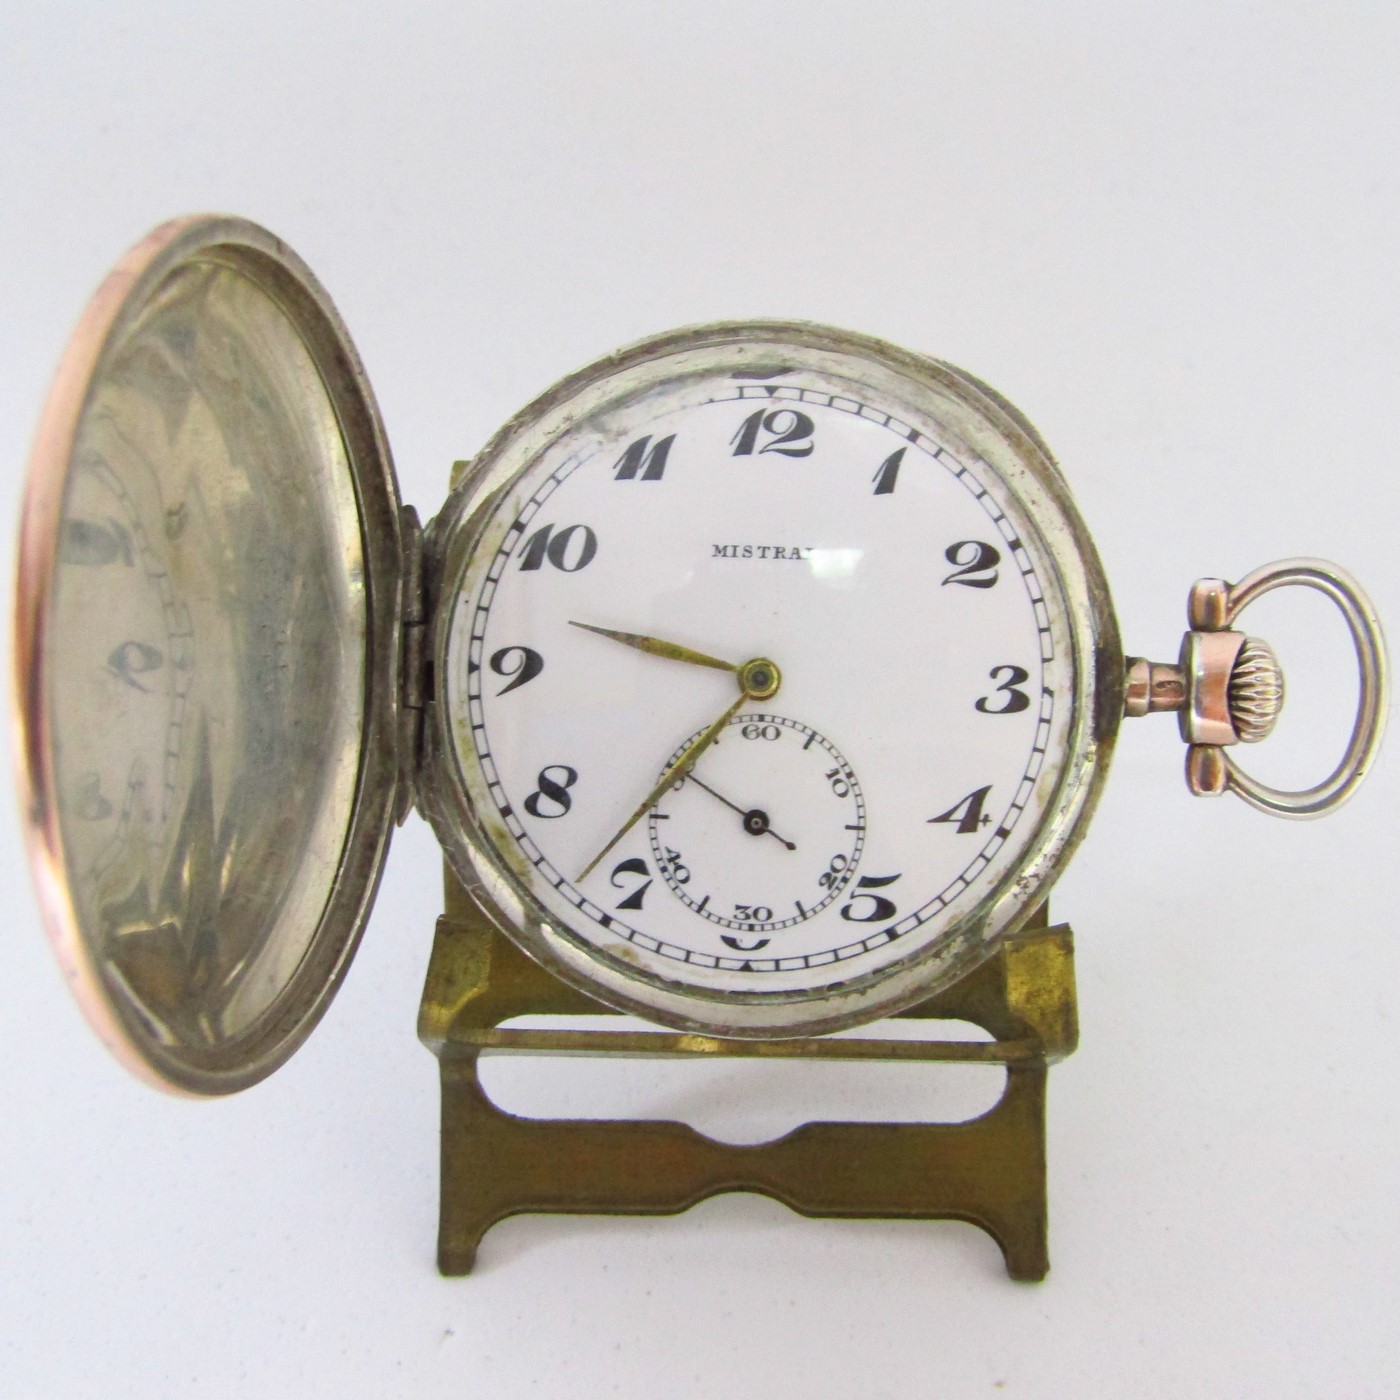 MOVADO - MISTRAL. Reloj de bolsillo, saboneta y remontoir. Plata. Suiza, ca. 1920.